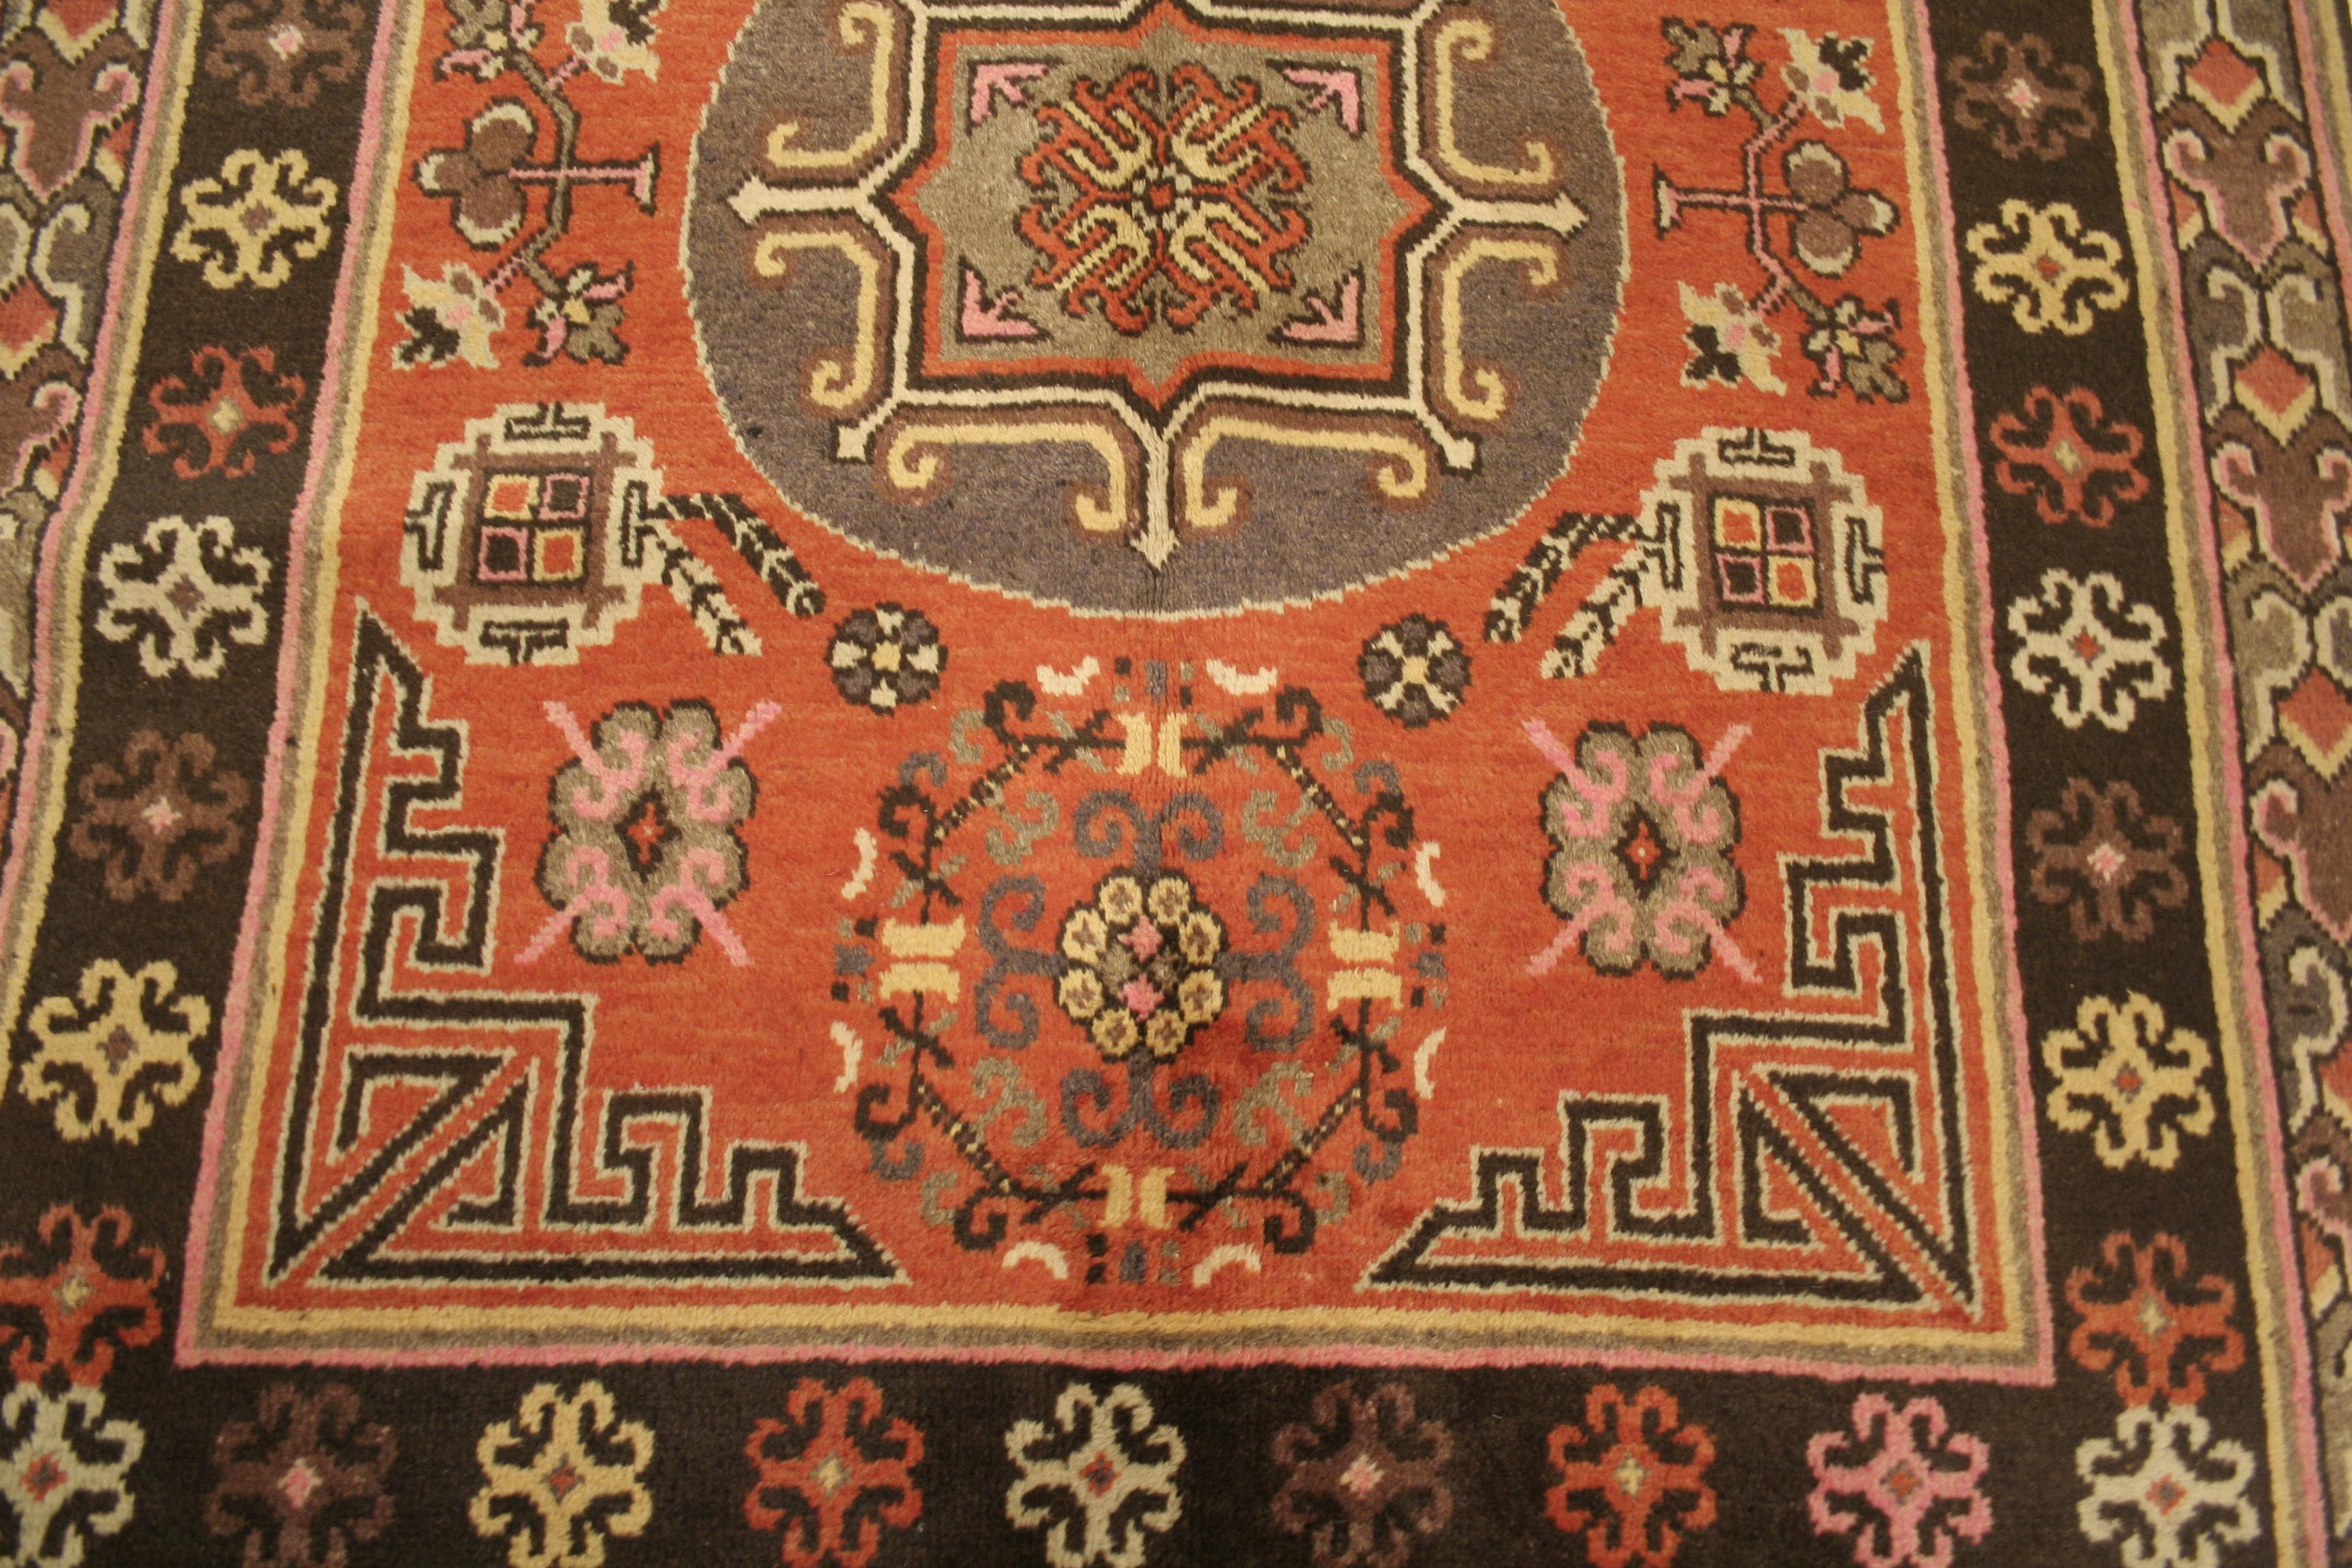 Die Faszination der Teppiche aus Ostturkestan, besser bekannt als Samarkands, zeigt sich am besten in der perfekten Balance zwischen der Kraft des geometrischen Musters und der anmutigen Eloquenz der kurvenreichen Motive. Hier zeichnet sich das